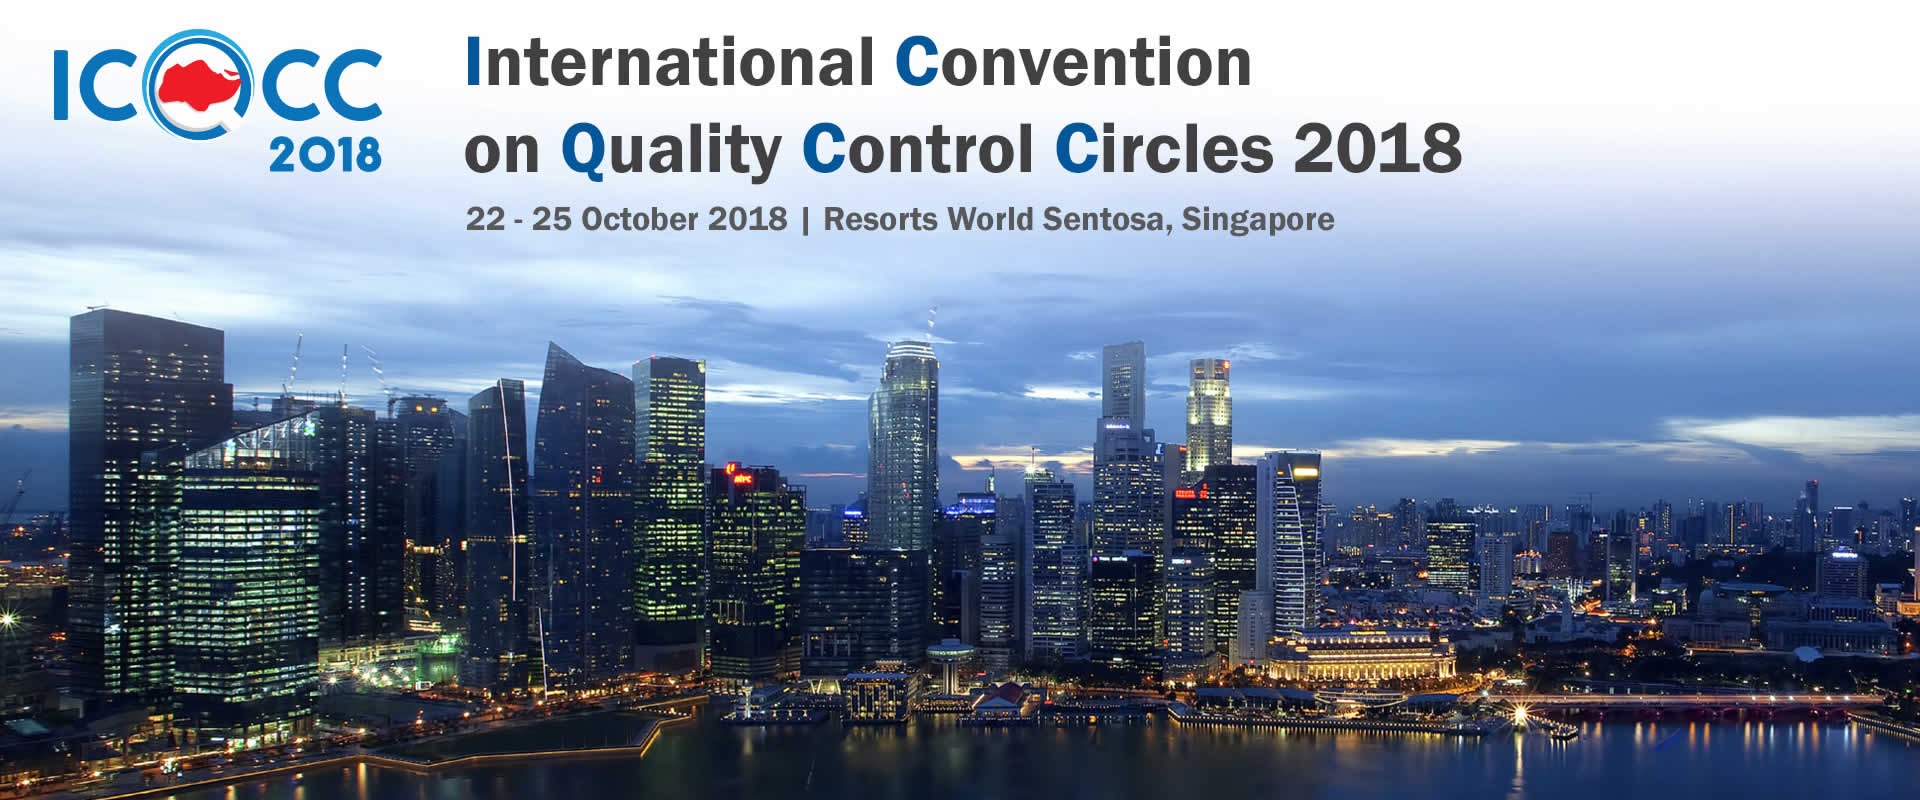 Les six grands gagnants s’envolent pour l’ICQCC 2018 au Singapour en octobre